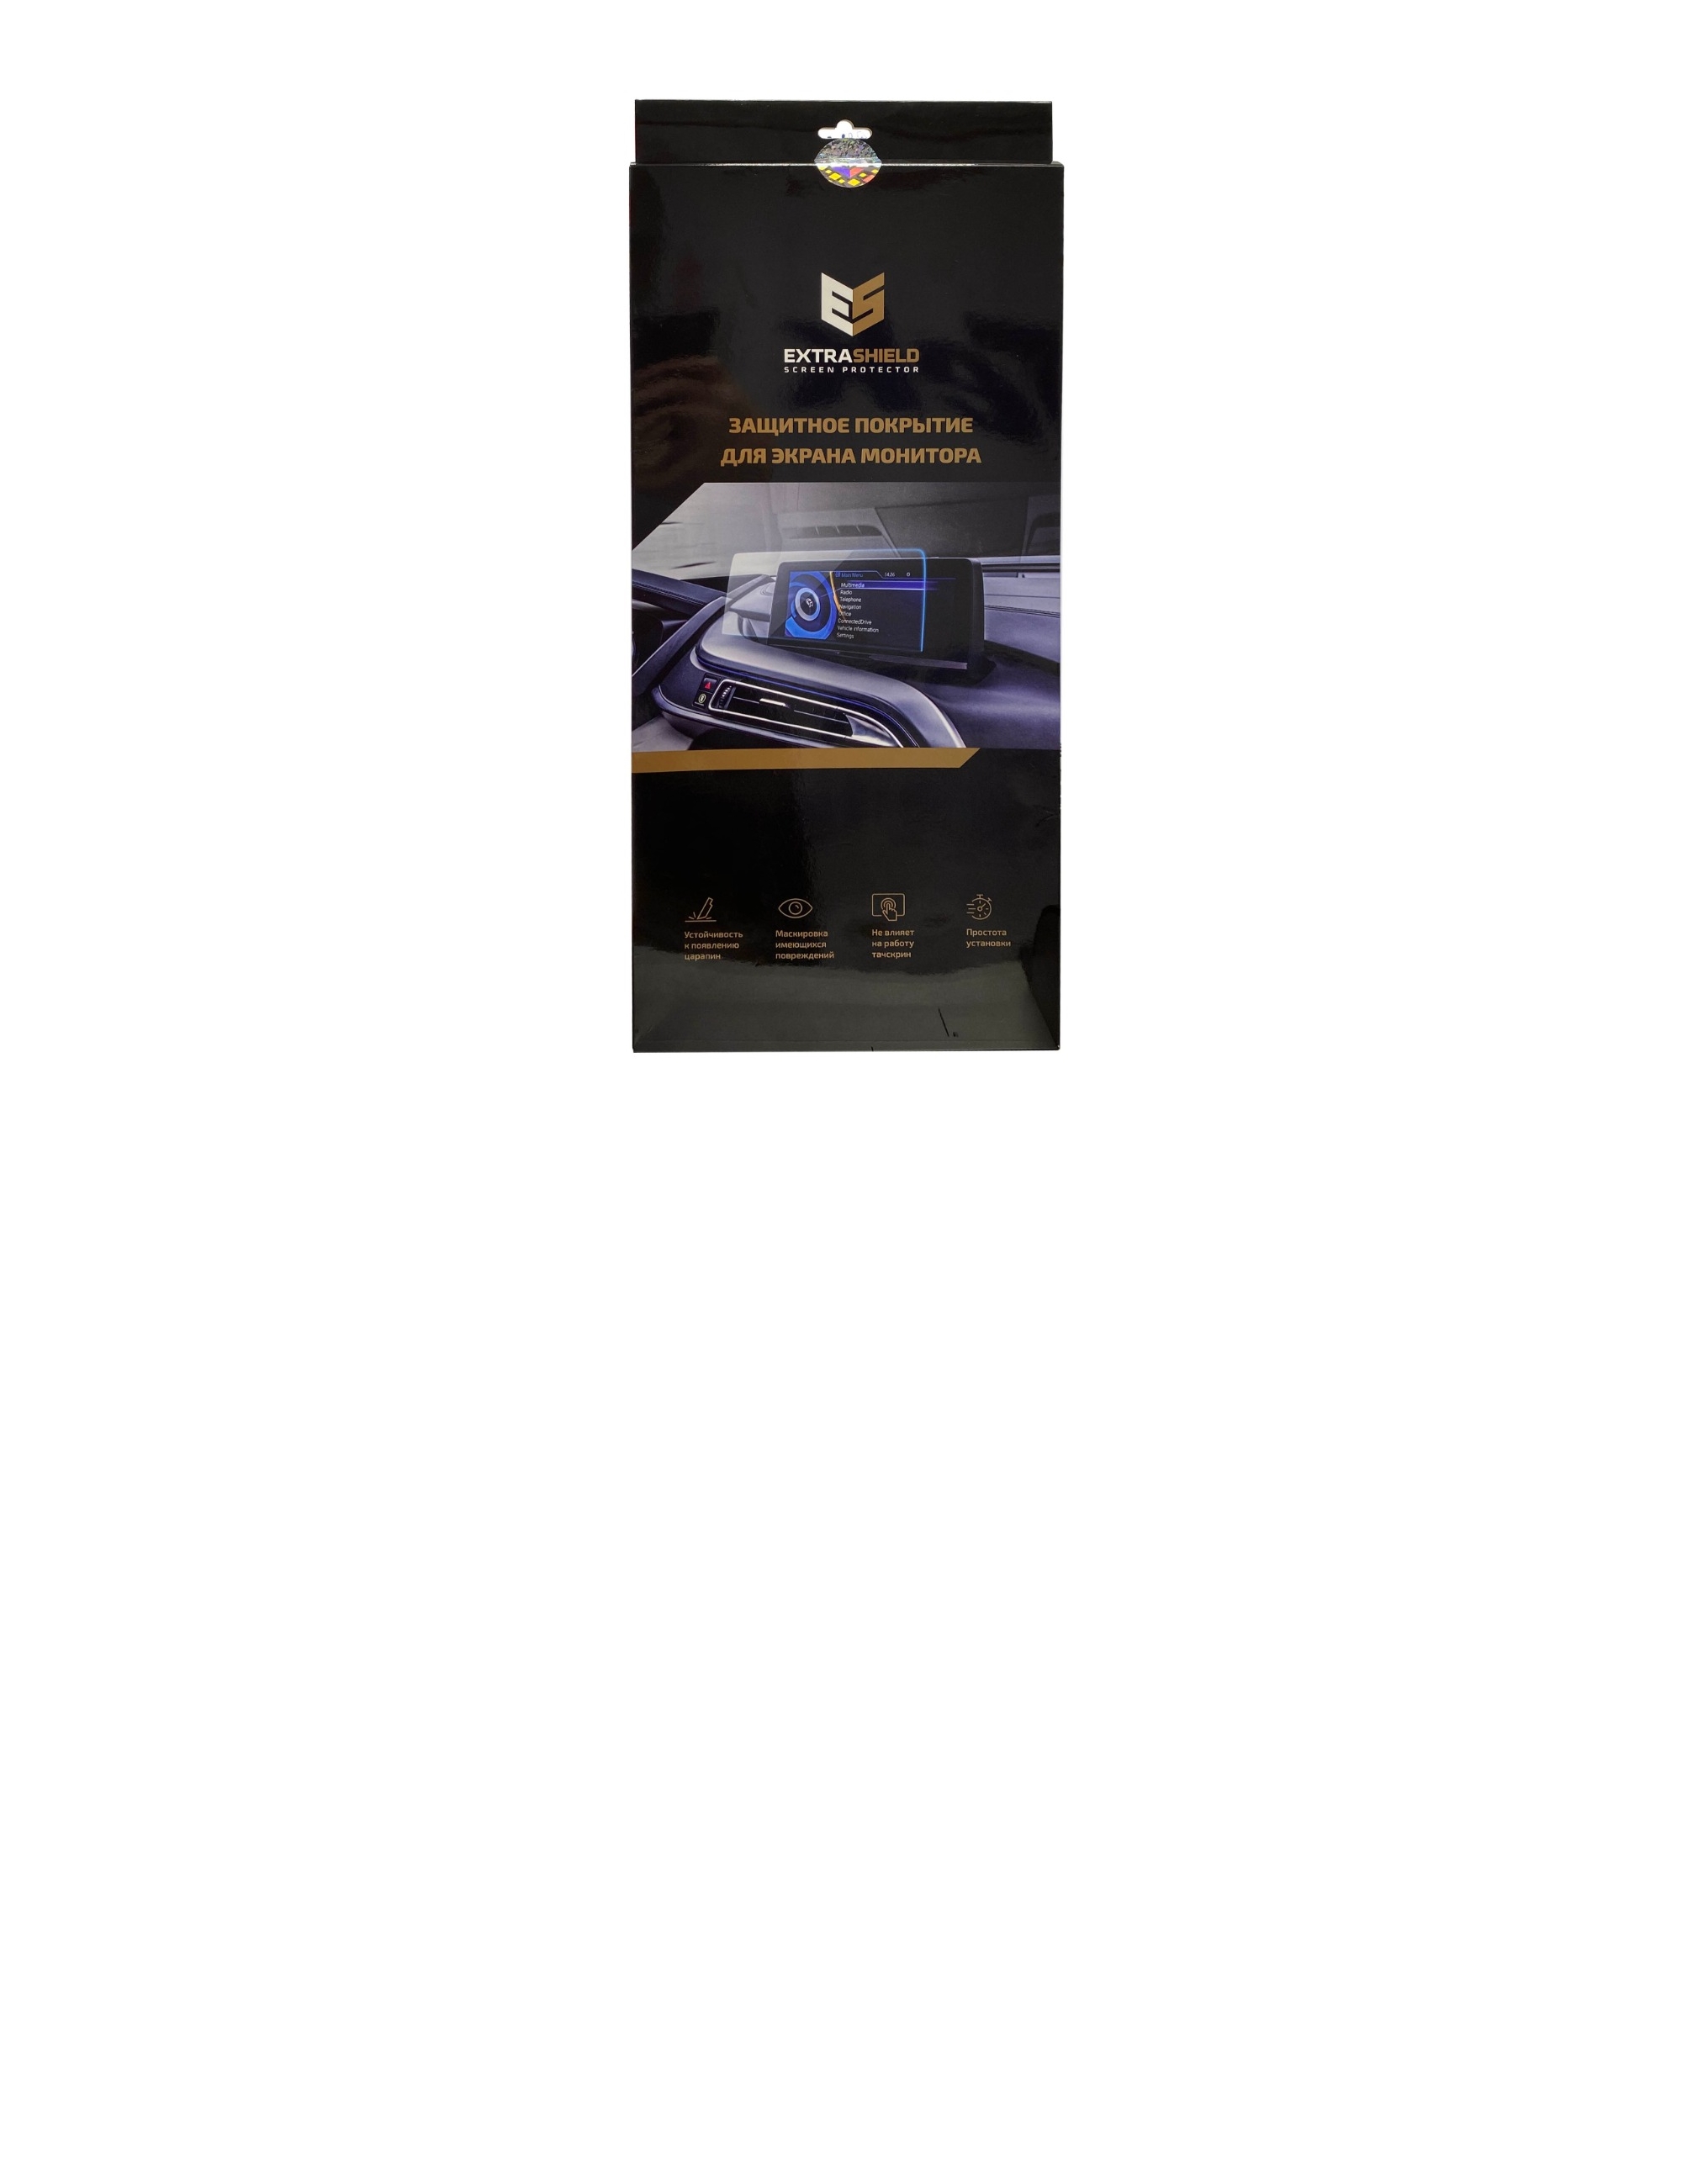 Skoda Octavia 2019 - н.в. приборная панель аналоговая SAID 12,3 Статическая пленка Матовая